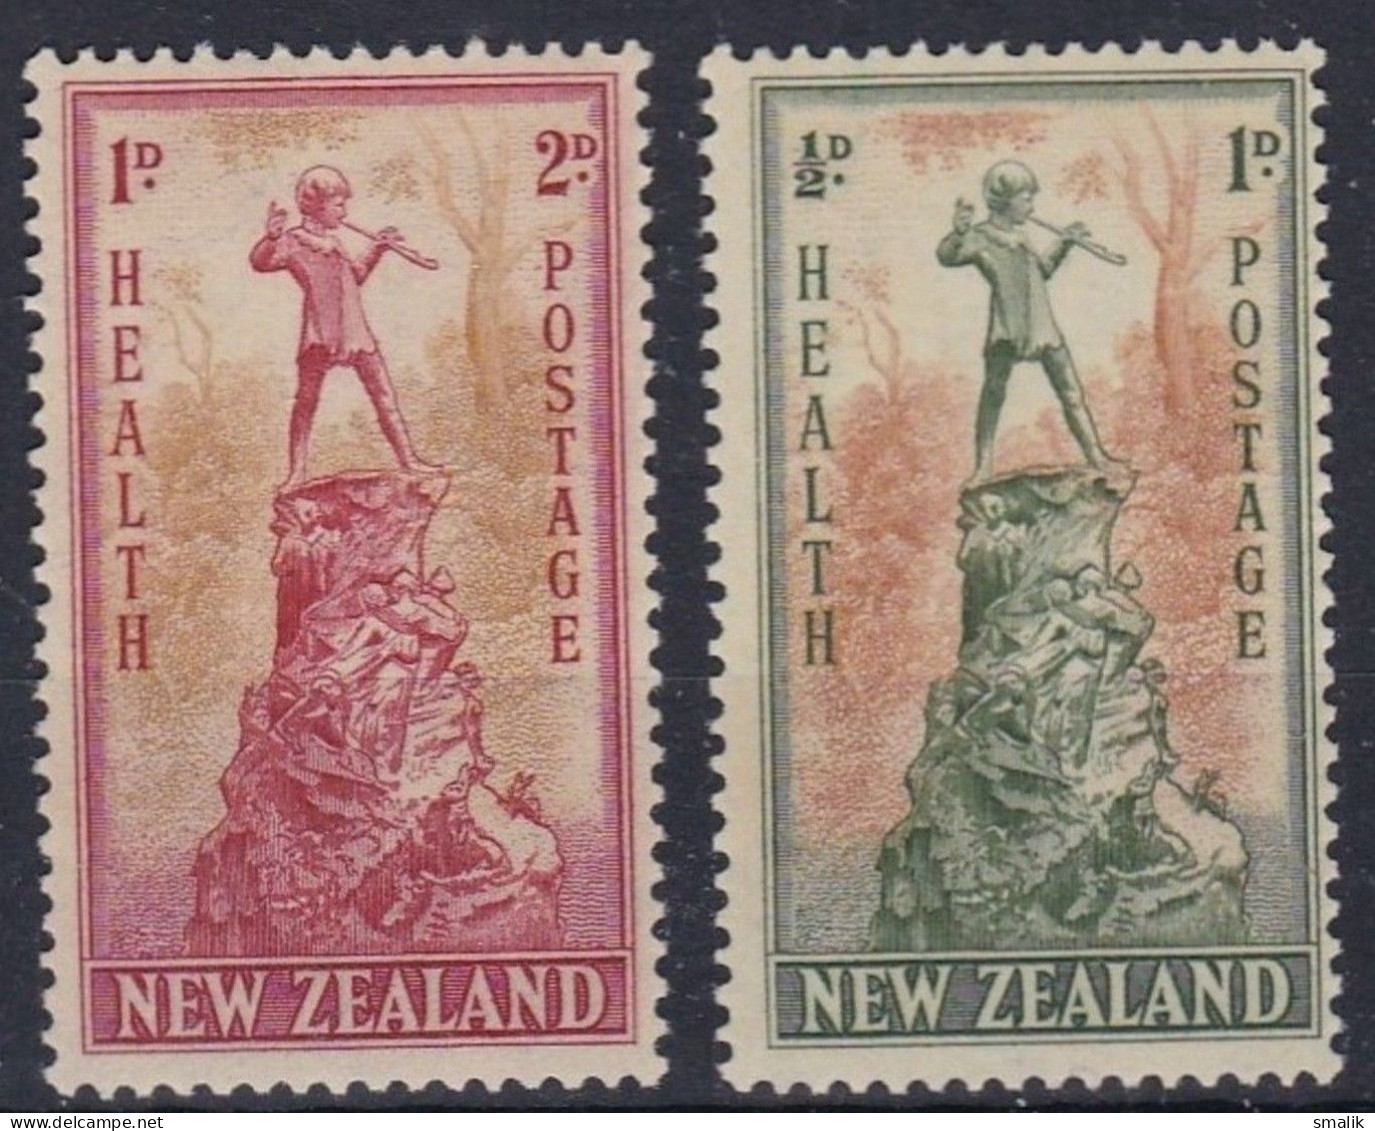 NEW ZEALAND 1945 - Health Surcharge, Peter Pan, Complete Set Of 2v. MNH - Ongebruikt